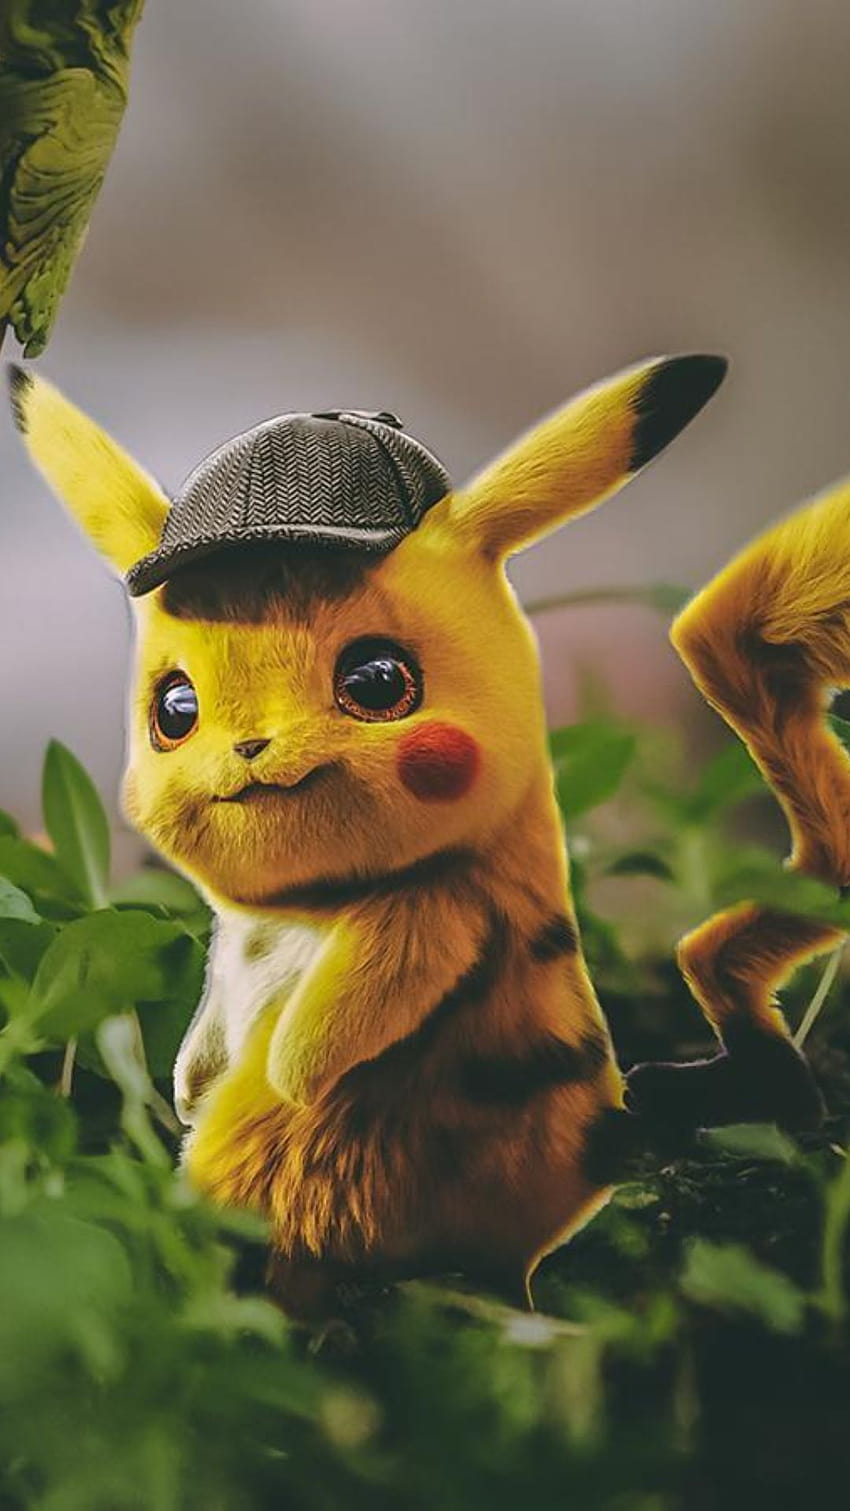 Baixe o papel de parede Pokémon Detetive Pikachu para o seu celular em  imagens verticais de alta qualidade Pokémon Detetive Pikachu gratuitamente